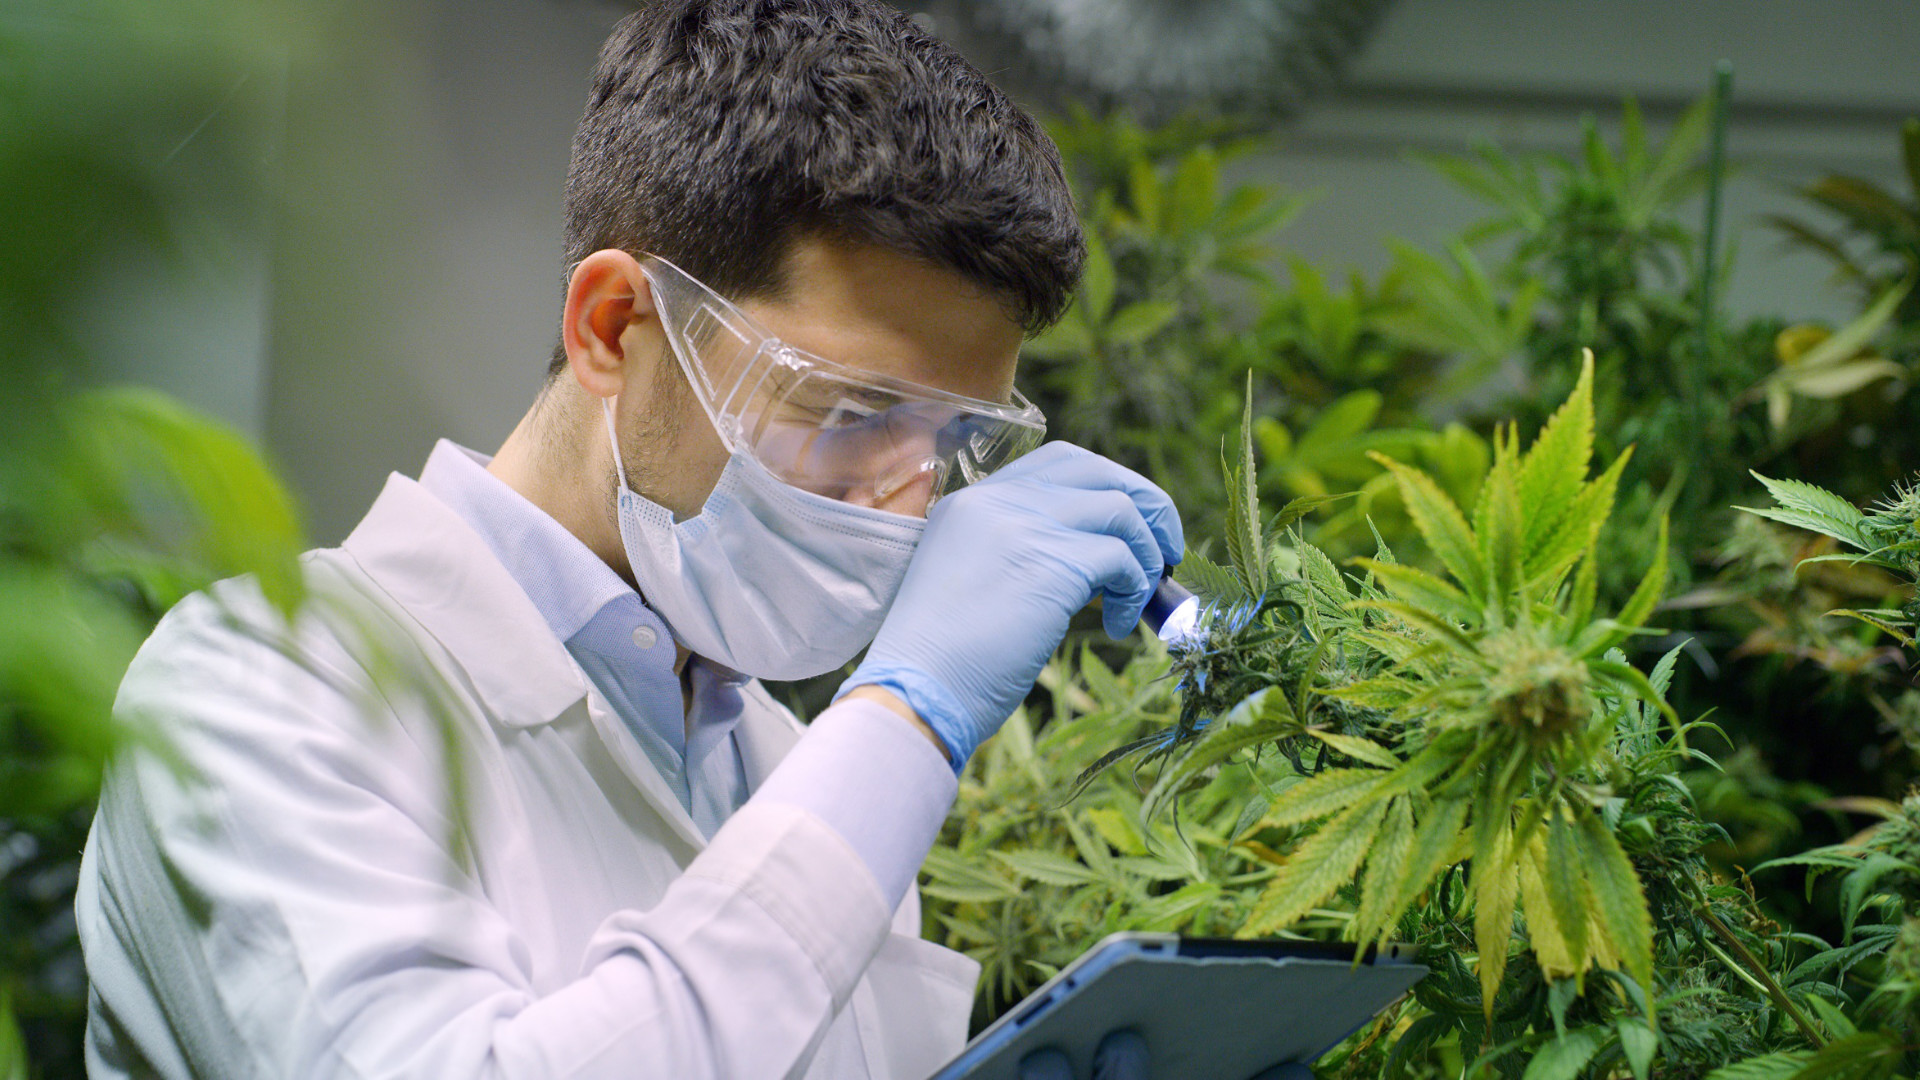 Visuelle Prüfung im Gewächshaus und chemische Analyse im Labor sichern die Qualität des medizinischen Cannabis. Foto: Shutterstock